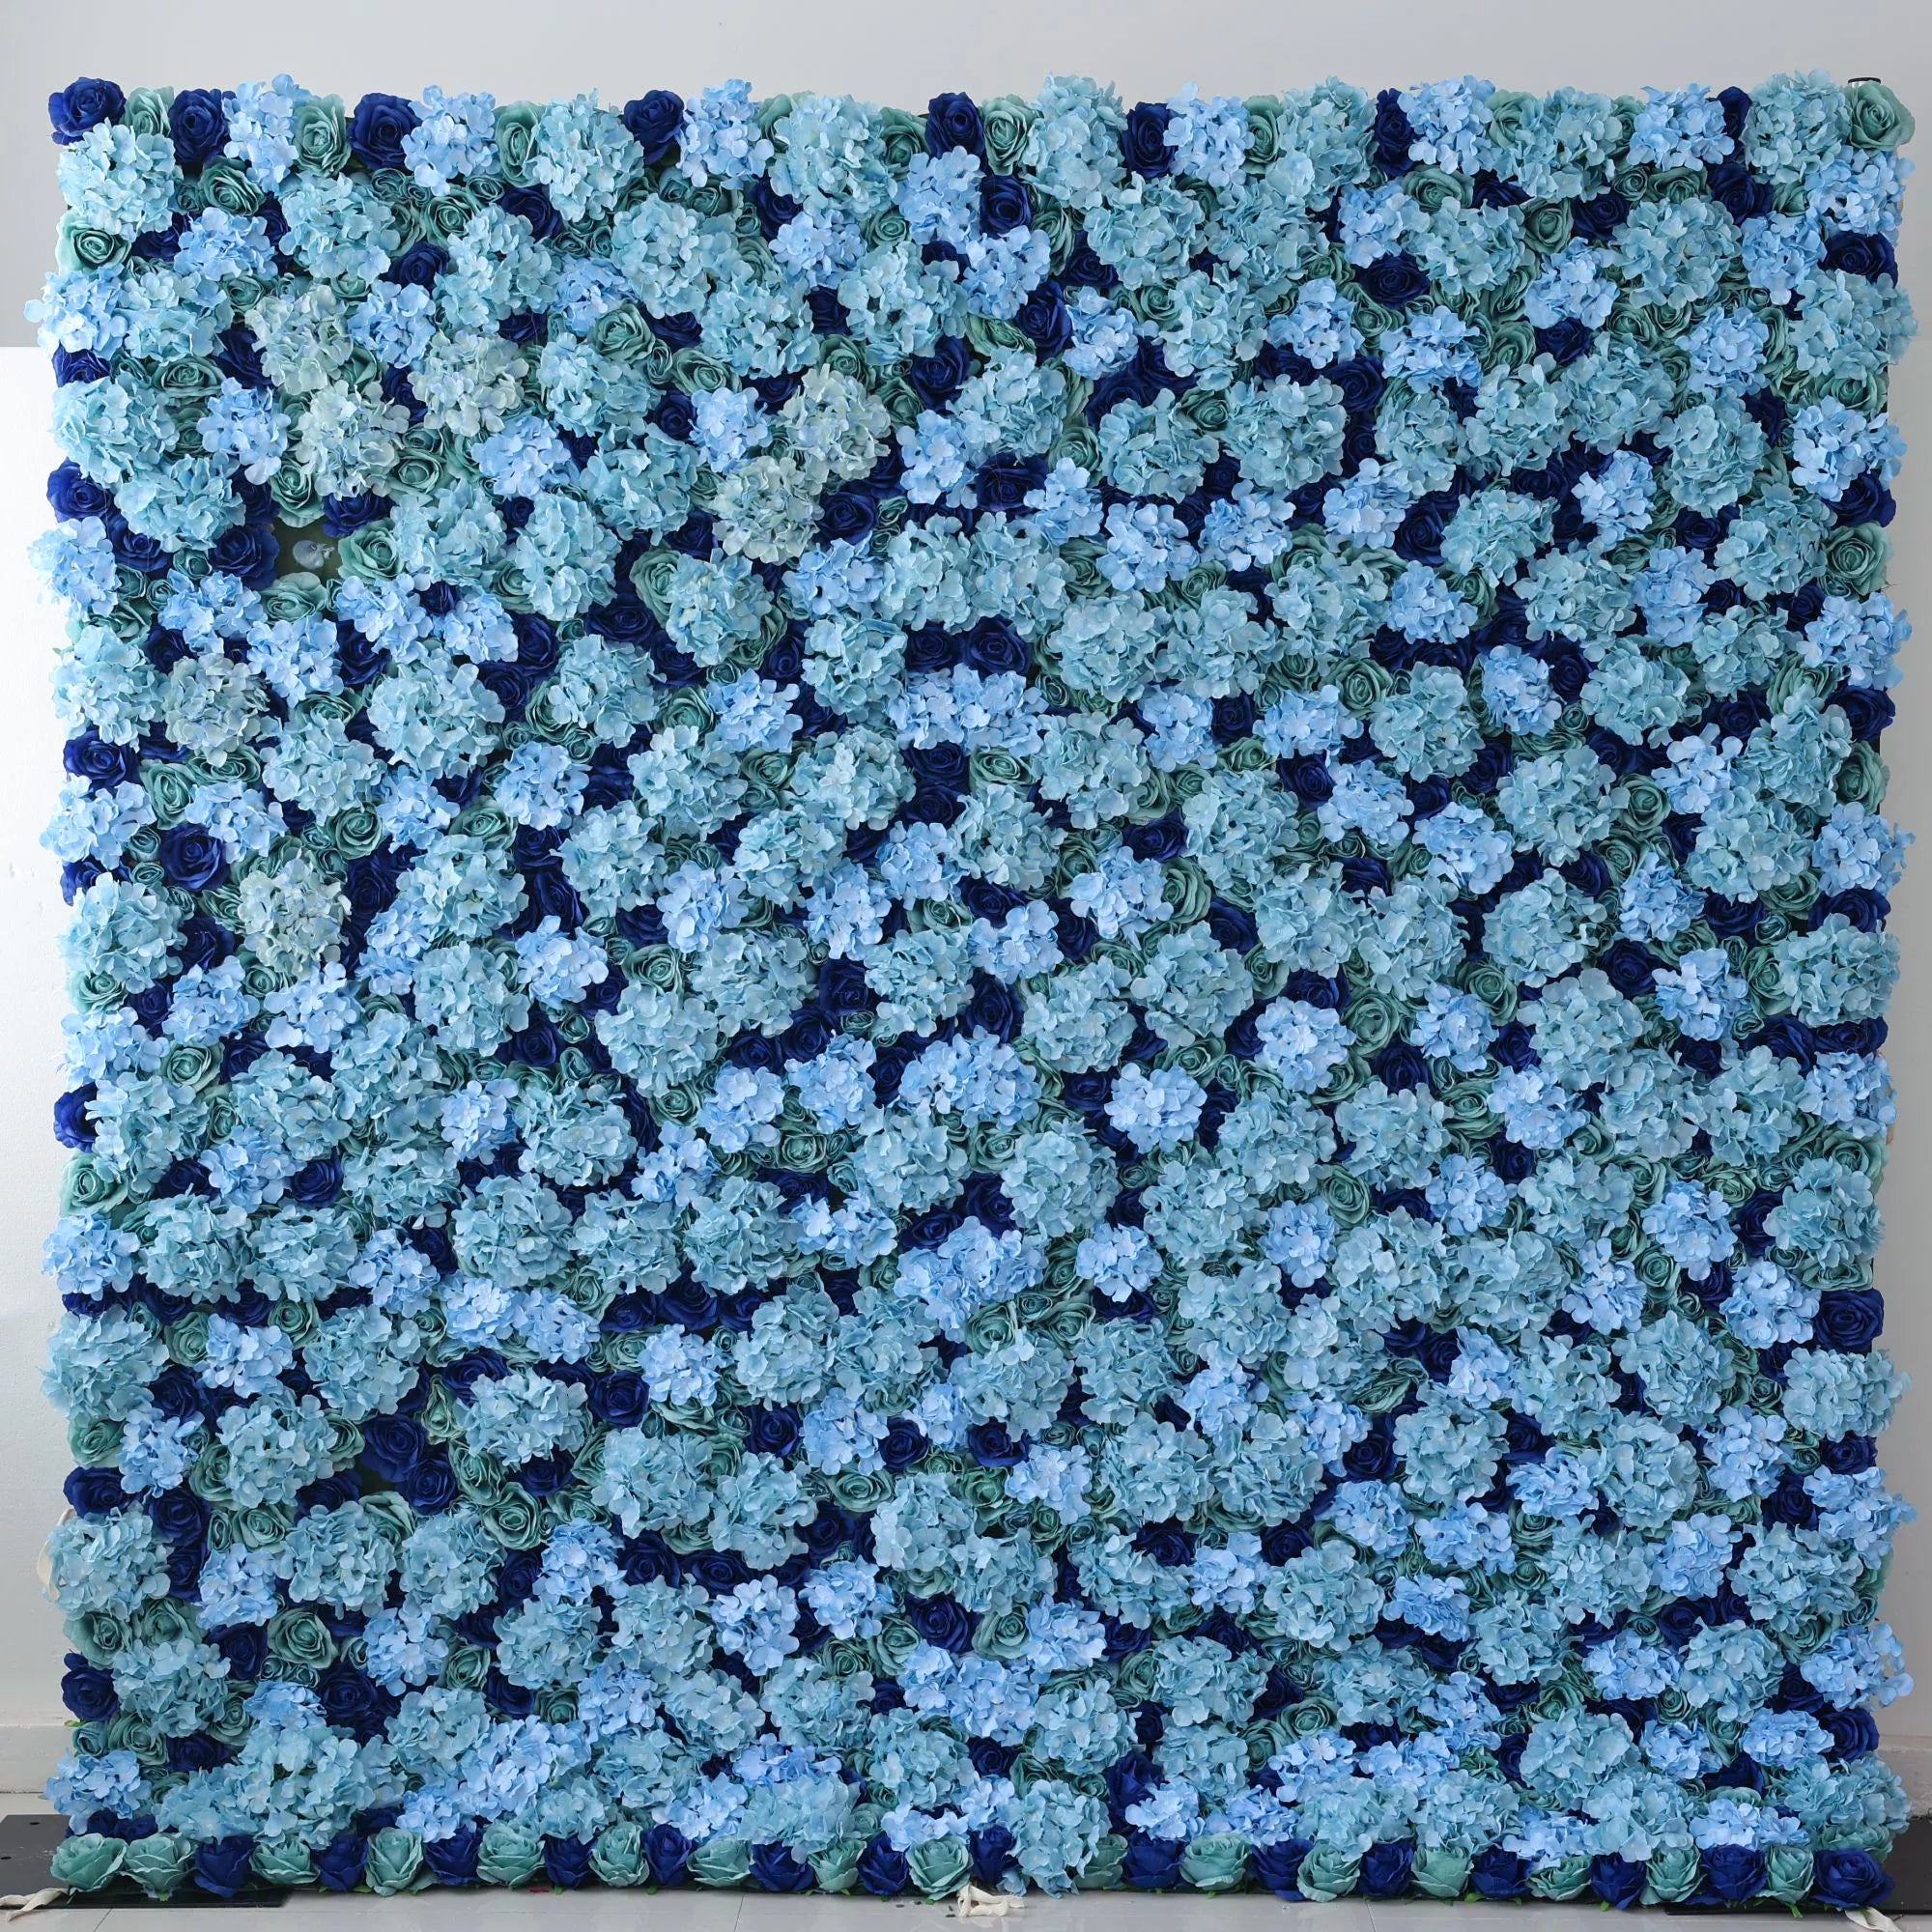 زهور فالار تقدم: أزهار أزور-مجموعة آسرة من الفيروز والزهور الزرقاء العميقة-الجدار المثالي للمواضيع المحيطية ، الأحداث البحرية والداخلية الهادئة